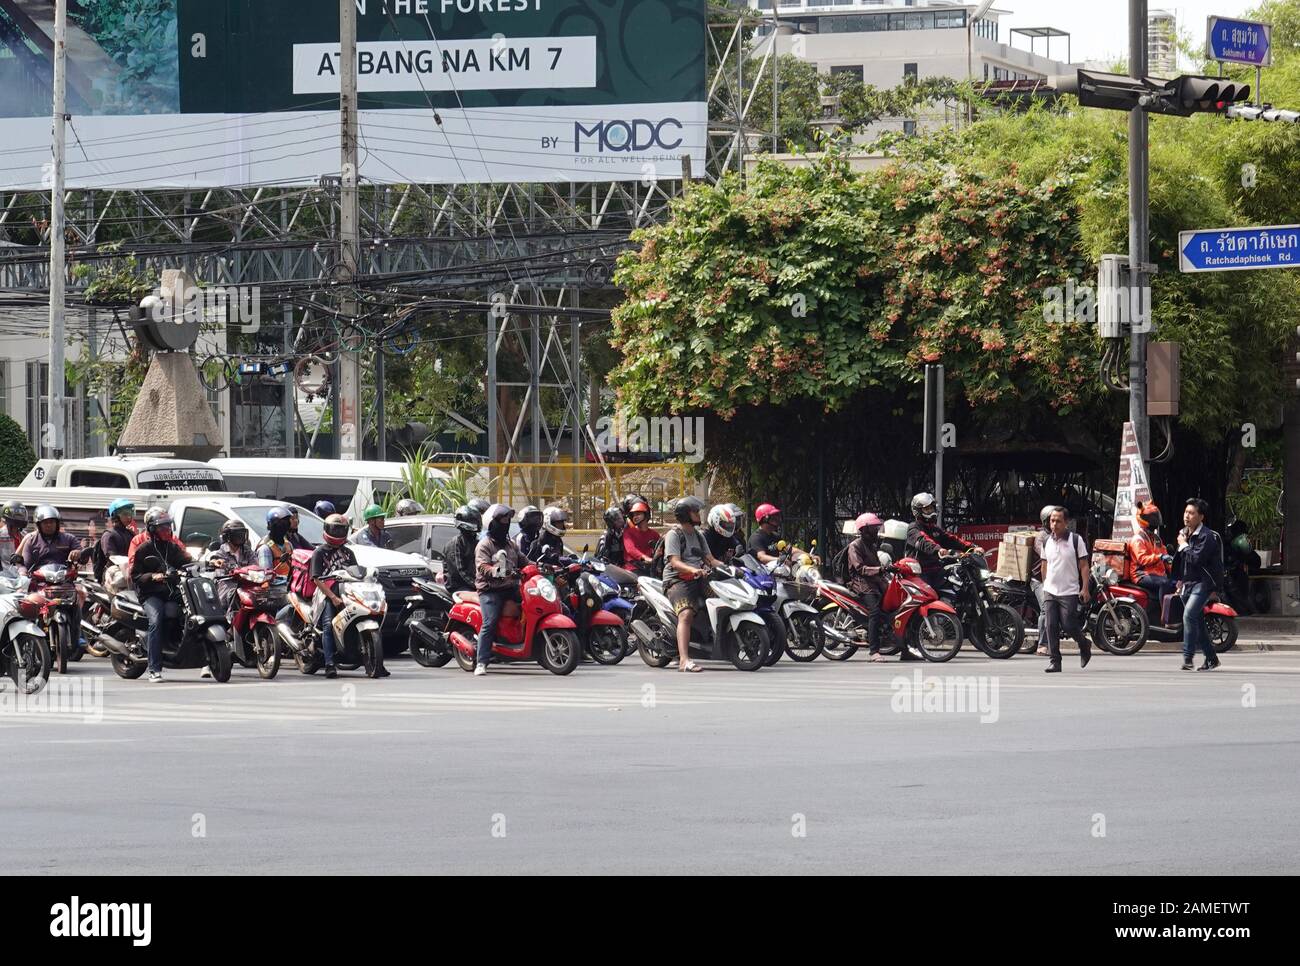 Bangkok, Tailandia - 26 de diciembre de 2019: Scooters y motocicletas están esperando a que los semáforos se iluminen en verde. Foto de stock